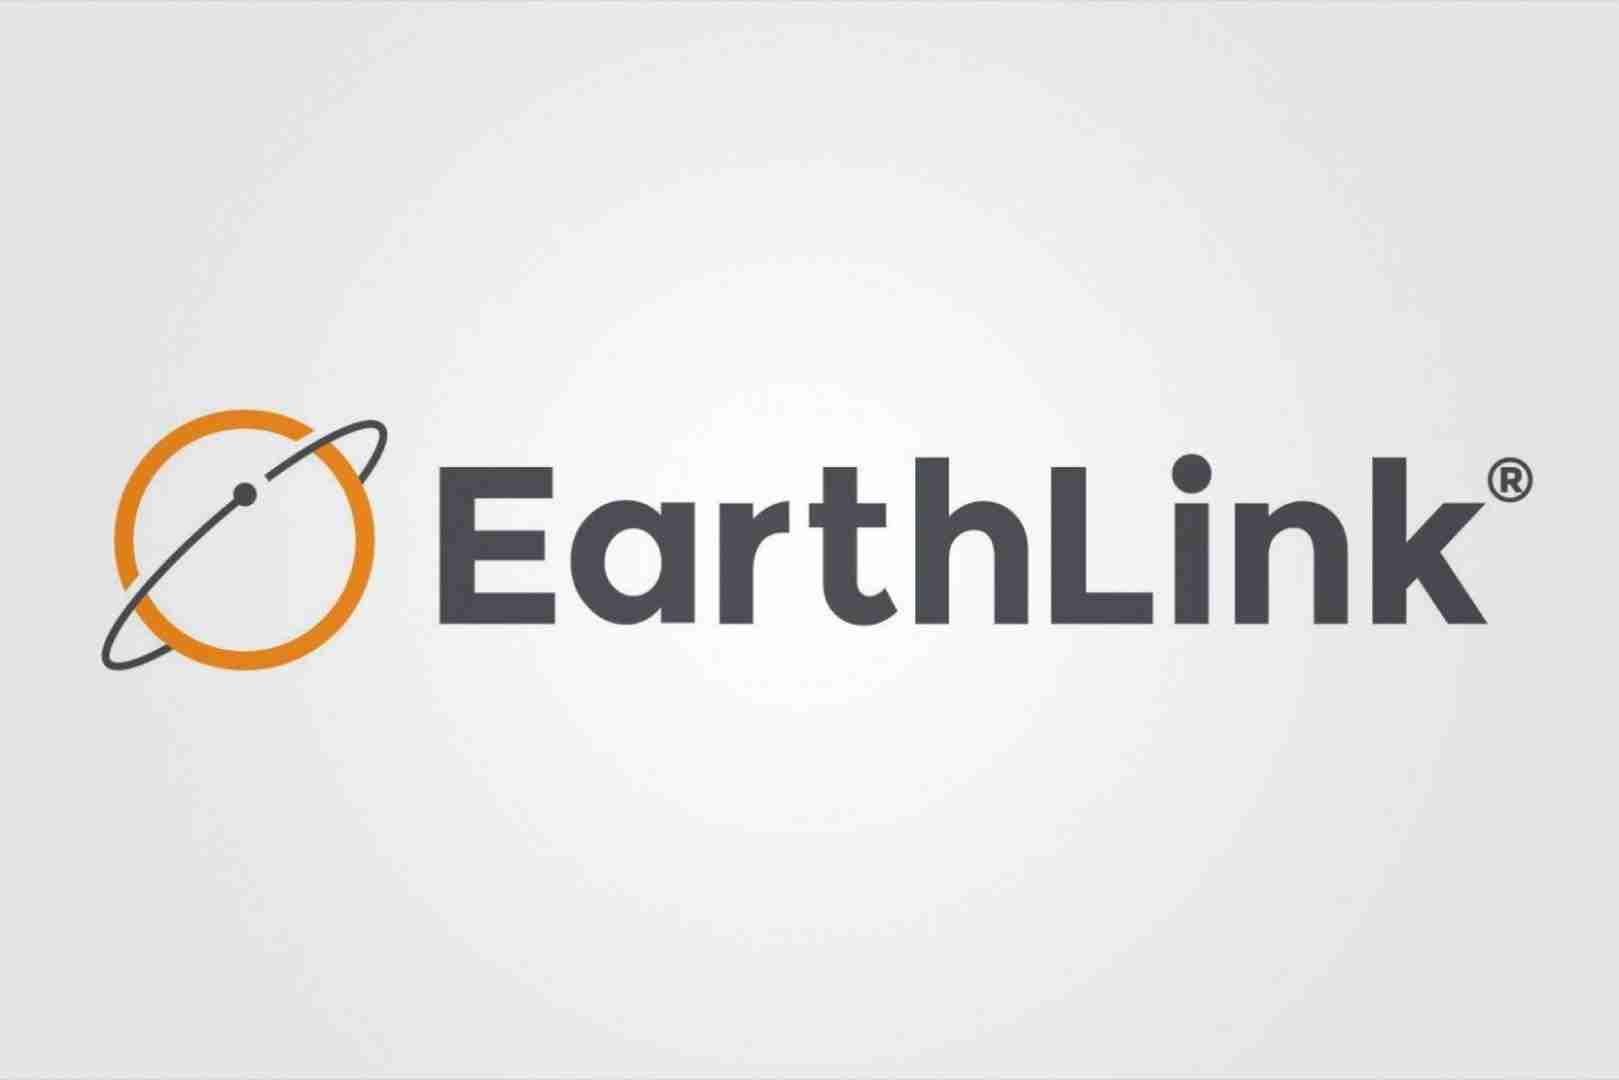 EarthLink帮助将网络推向公众。现在它想以新的东西出名。